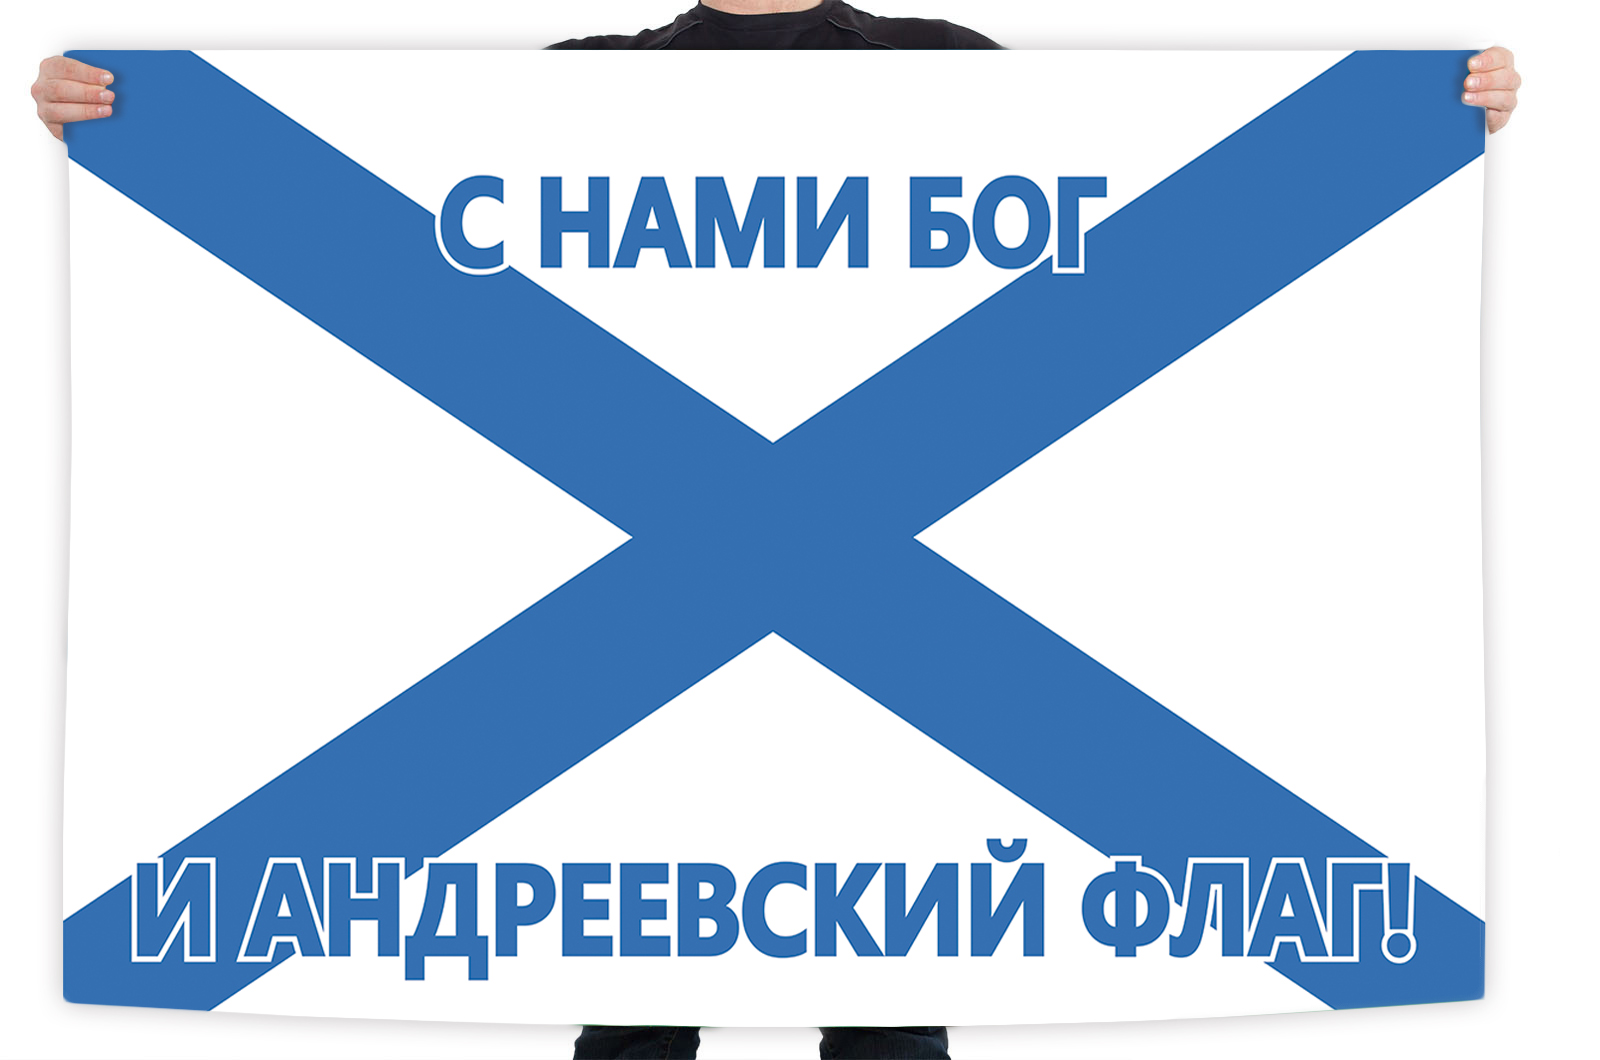 Знамя ВМФ "С нами Бог и Андреевский флаг!"